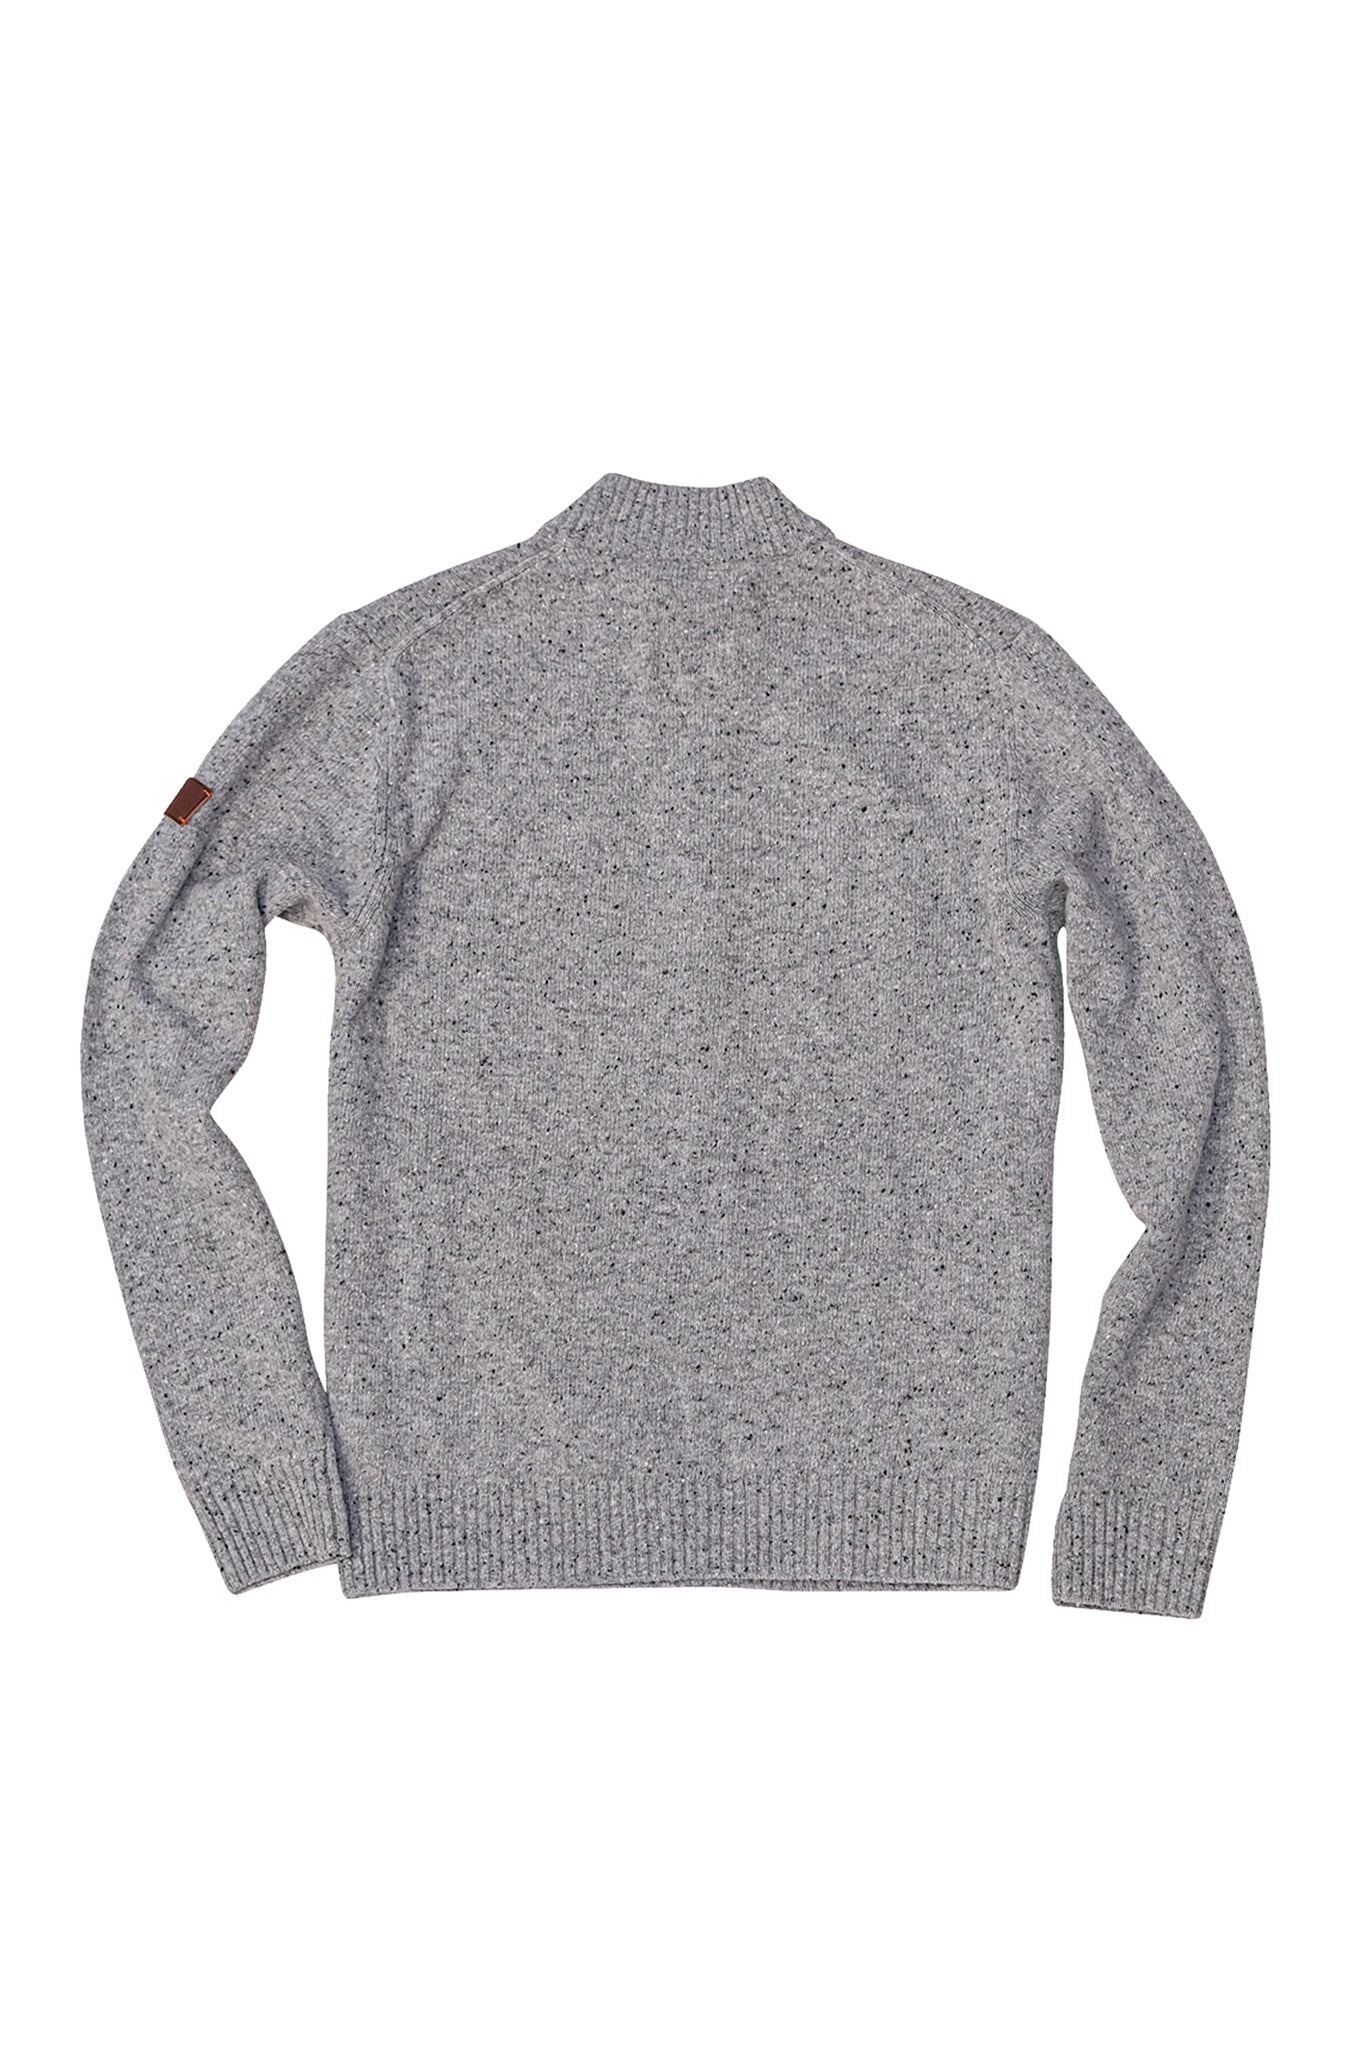 Equinox Zip Sweater